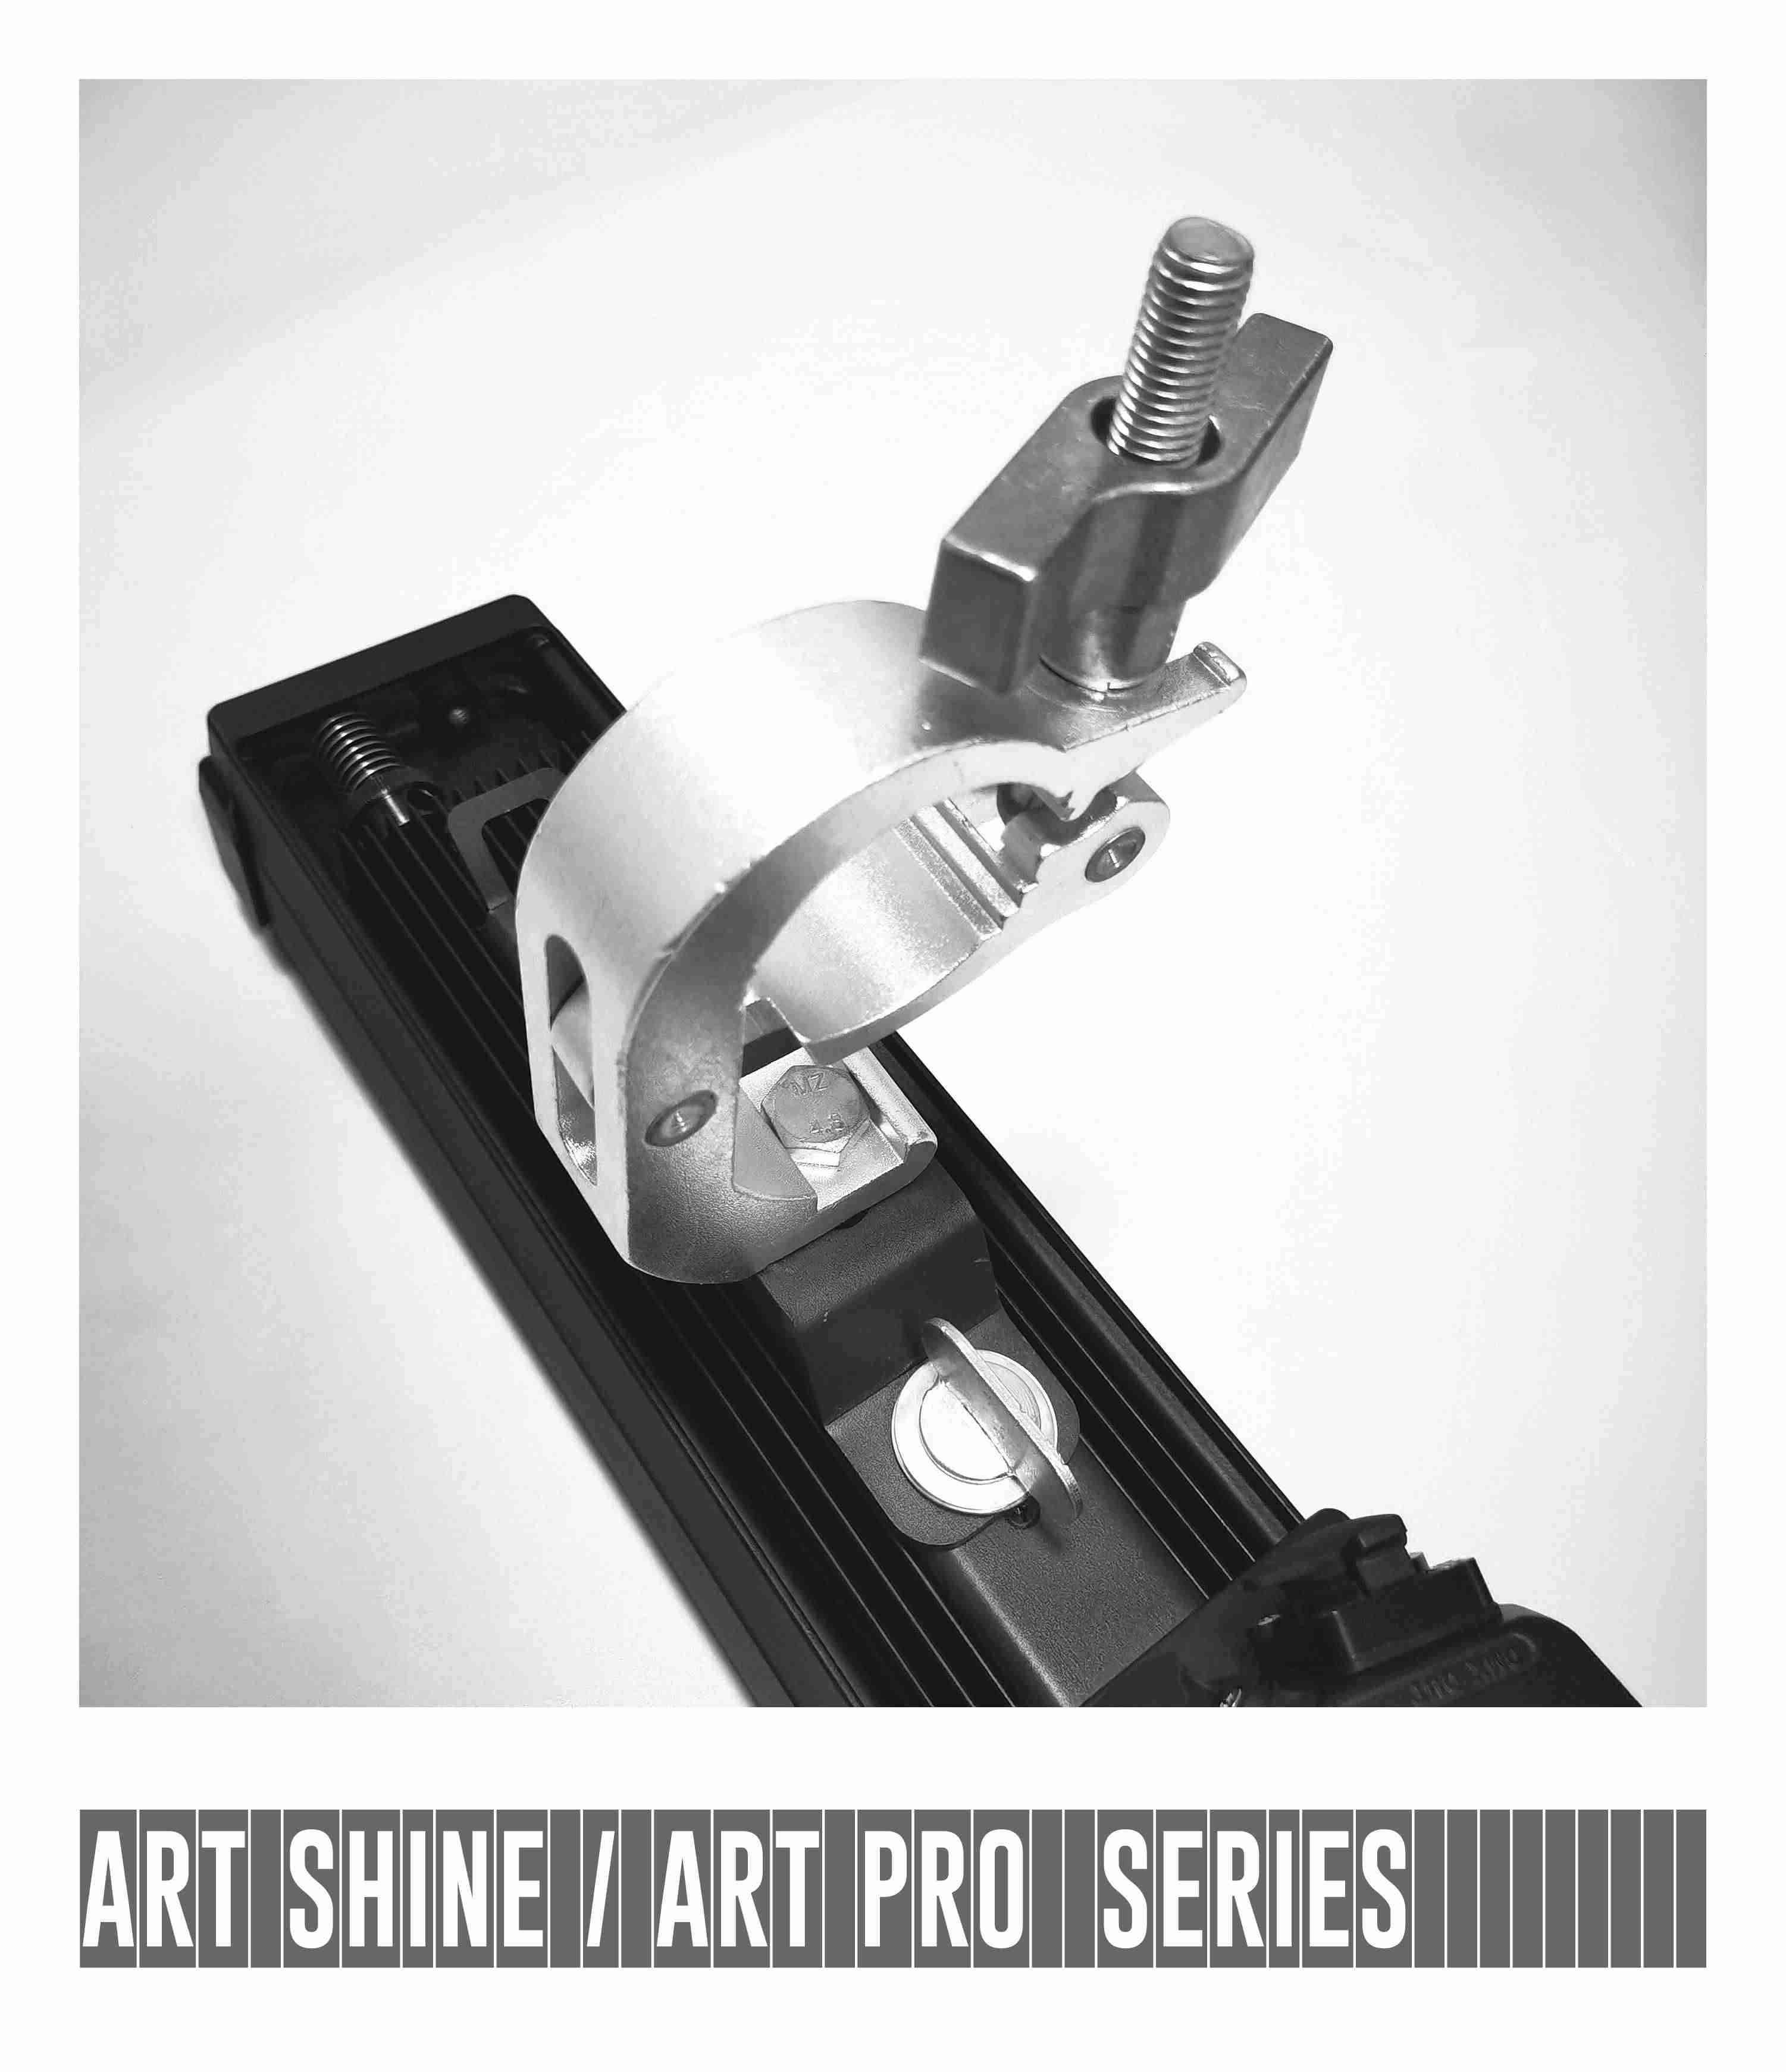 lighting hook for art shine art pro series (2)(1)